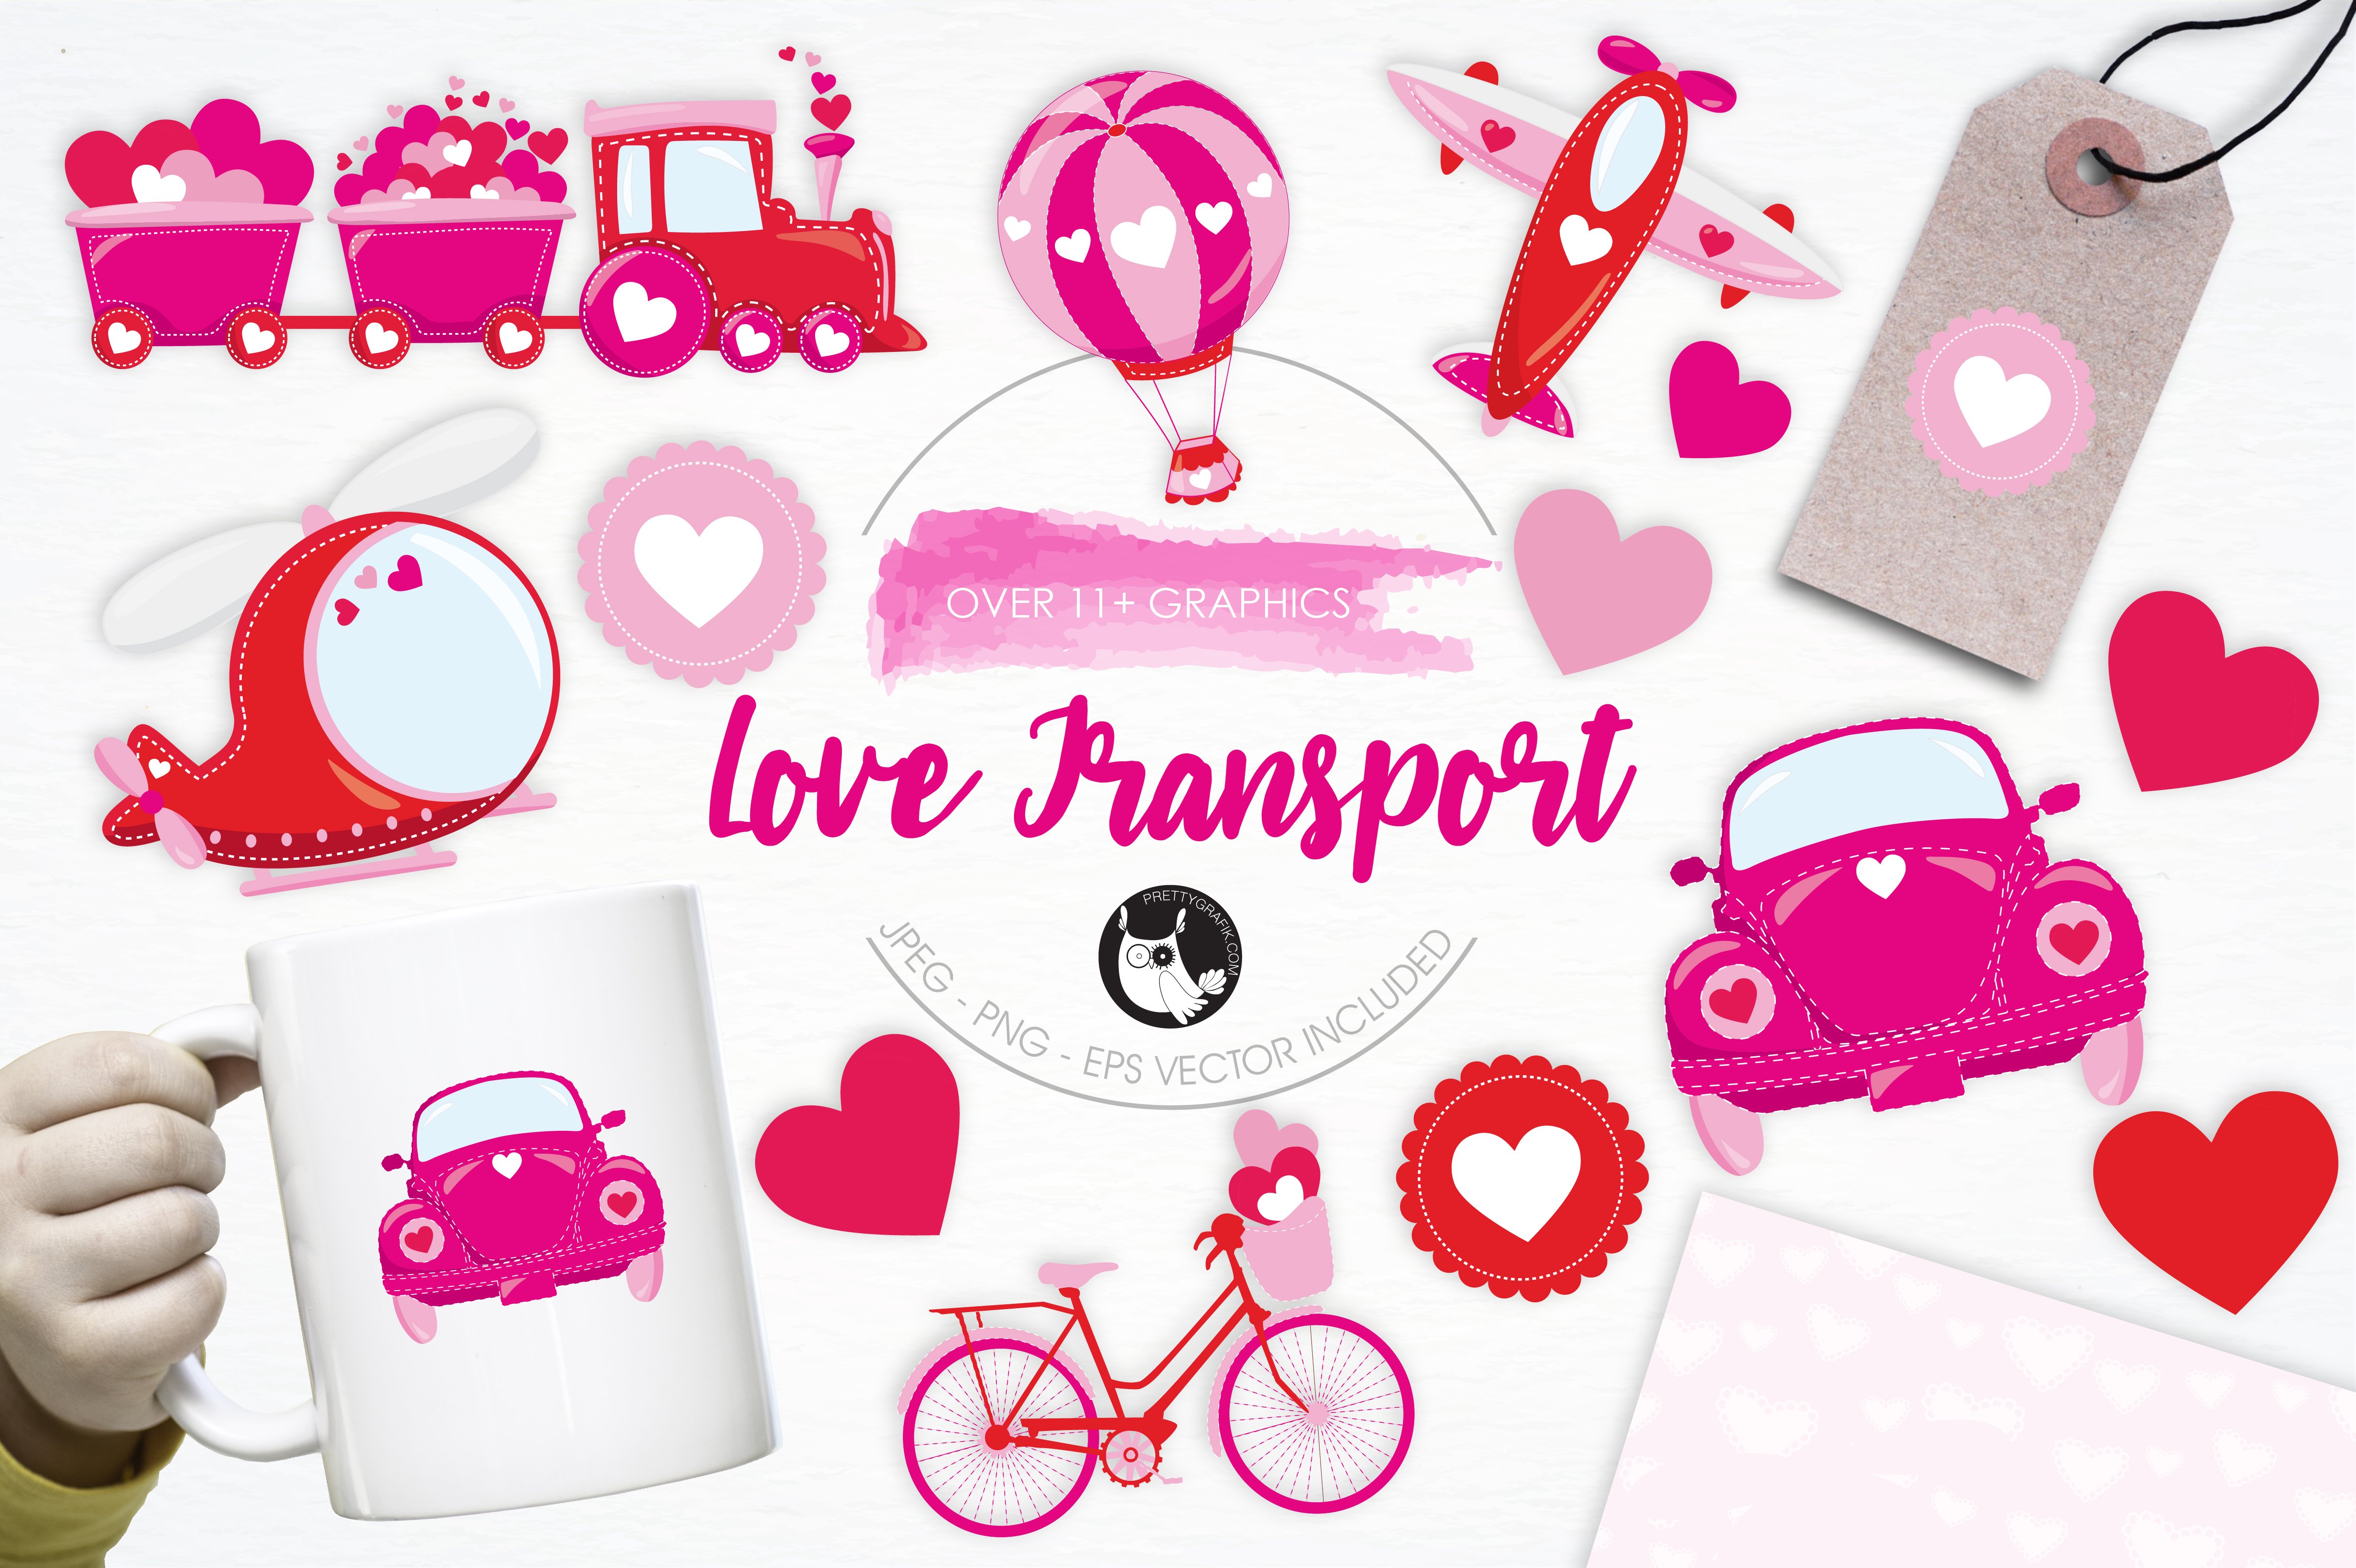 Love Transport illustration pack - Vector Image